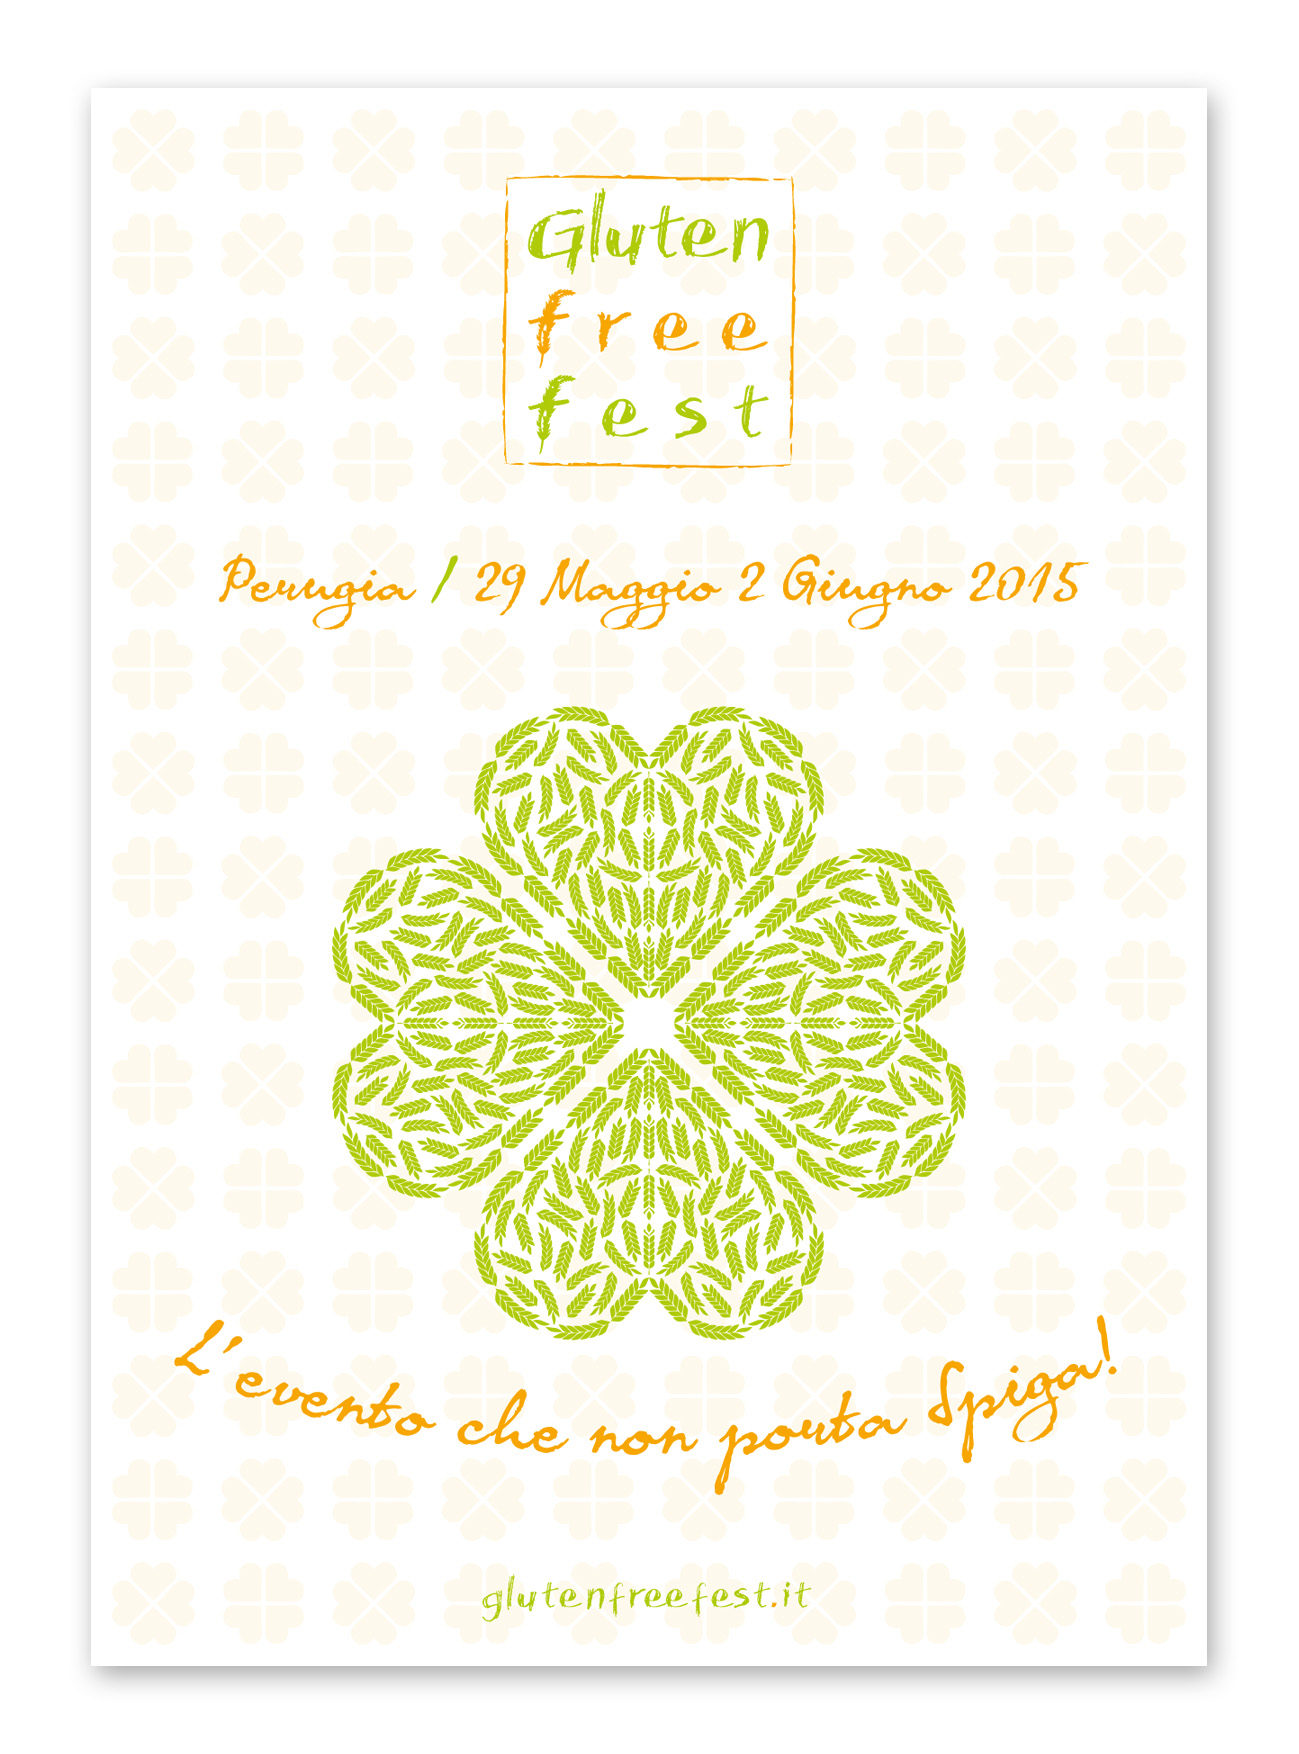  Gluten Free Fest torna a Perugia dal 29 Maggio al 2 Giugno